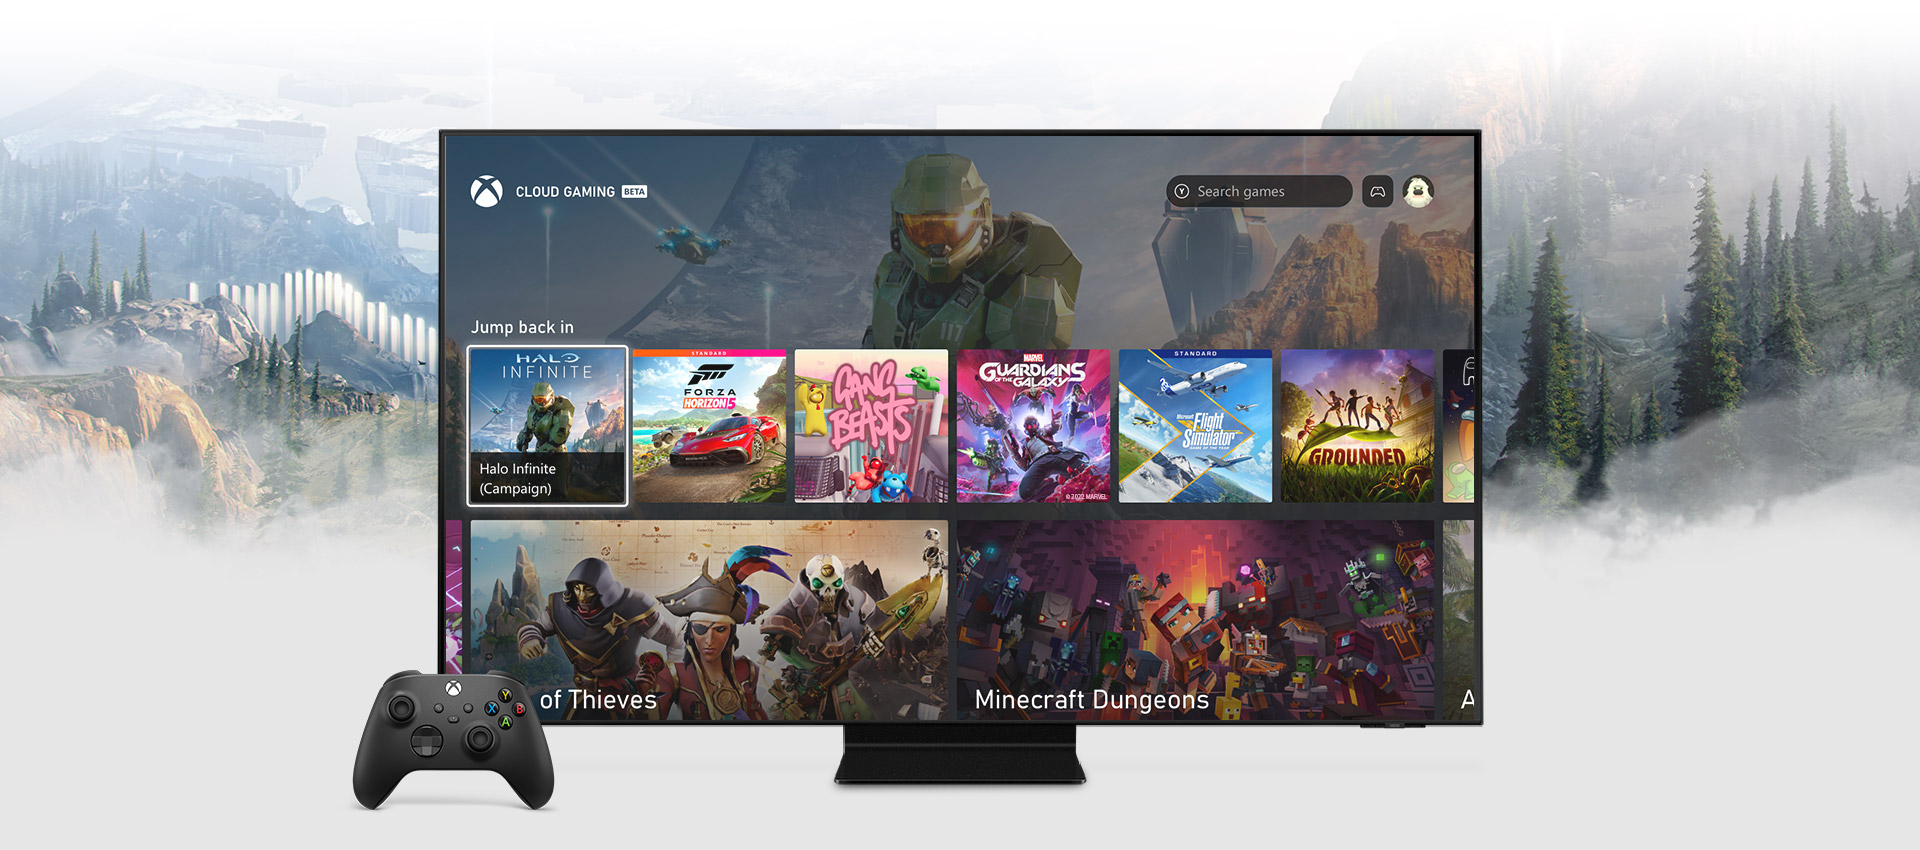 Xbox alkalmazás kezdőképernyő Samsung okostévén